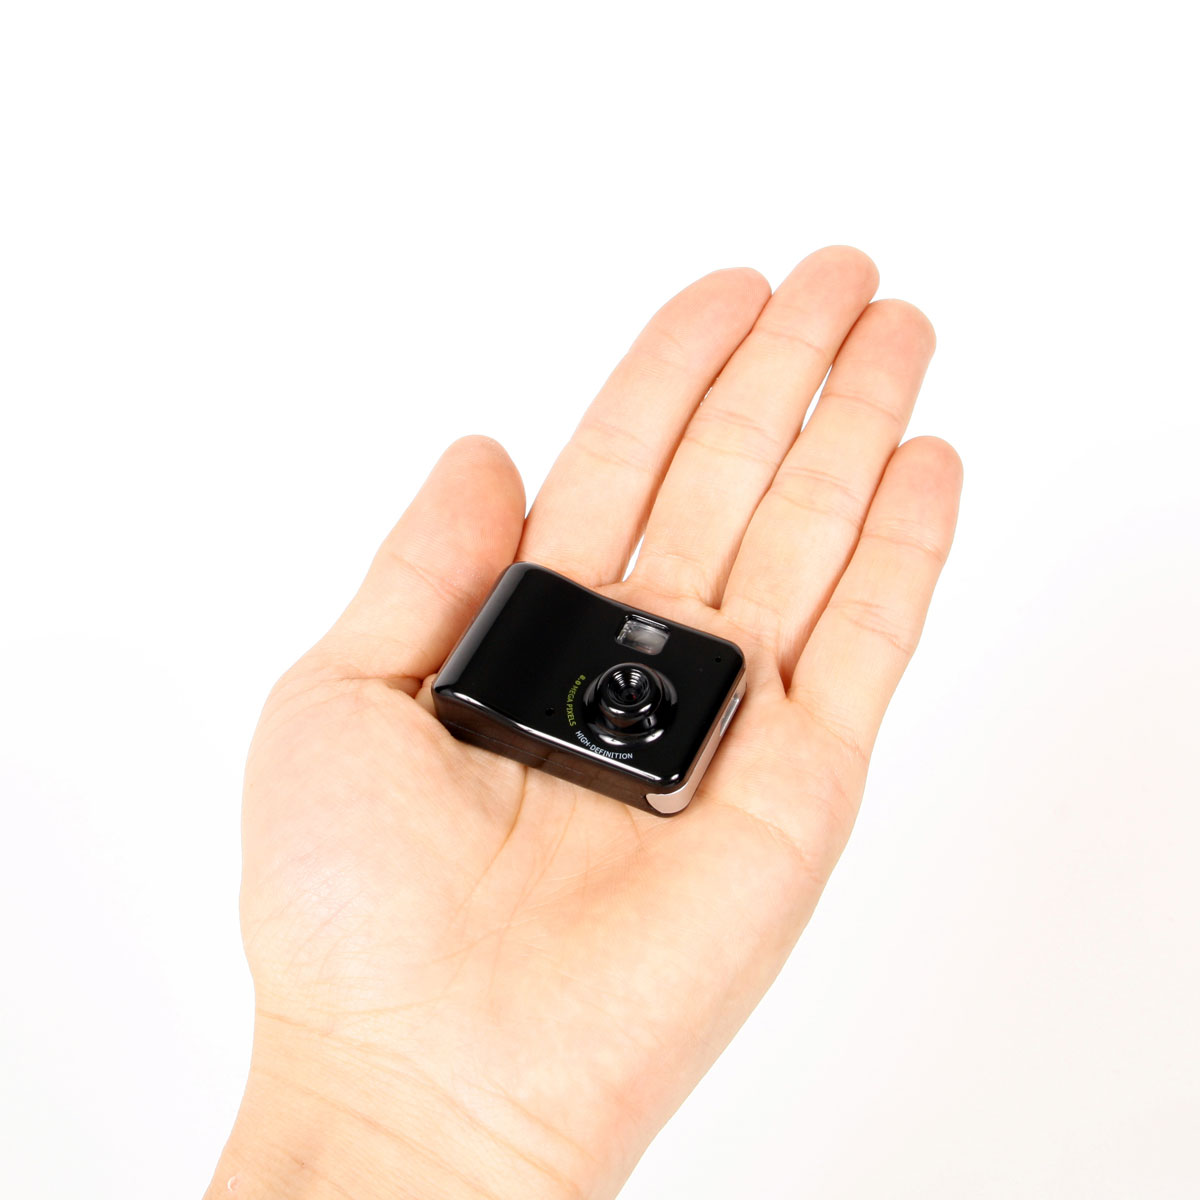 800万画素でHD動画も撮影できる手のひらサイズの超極小カメラ「小っ 